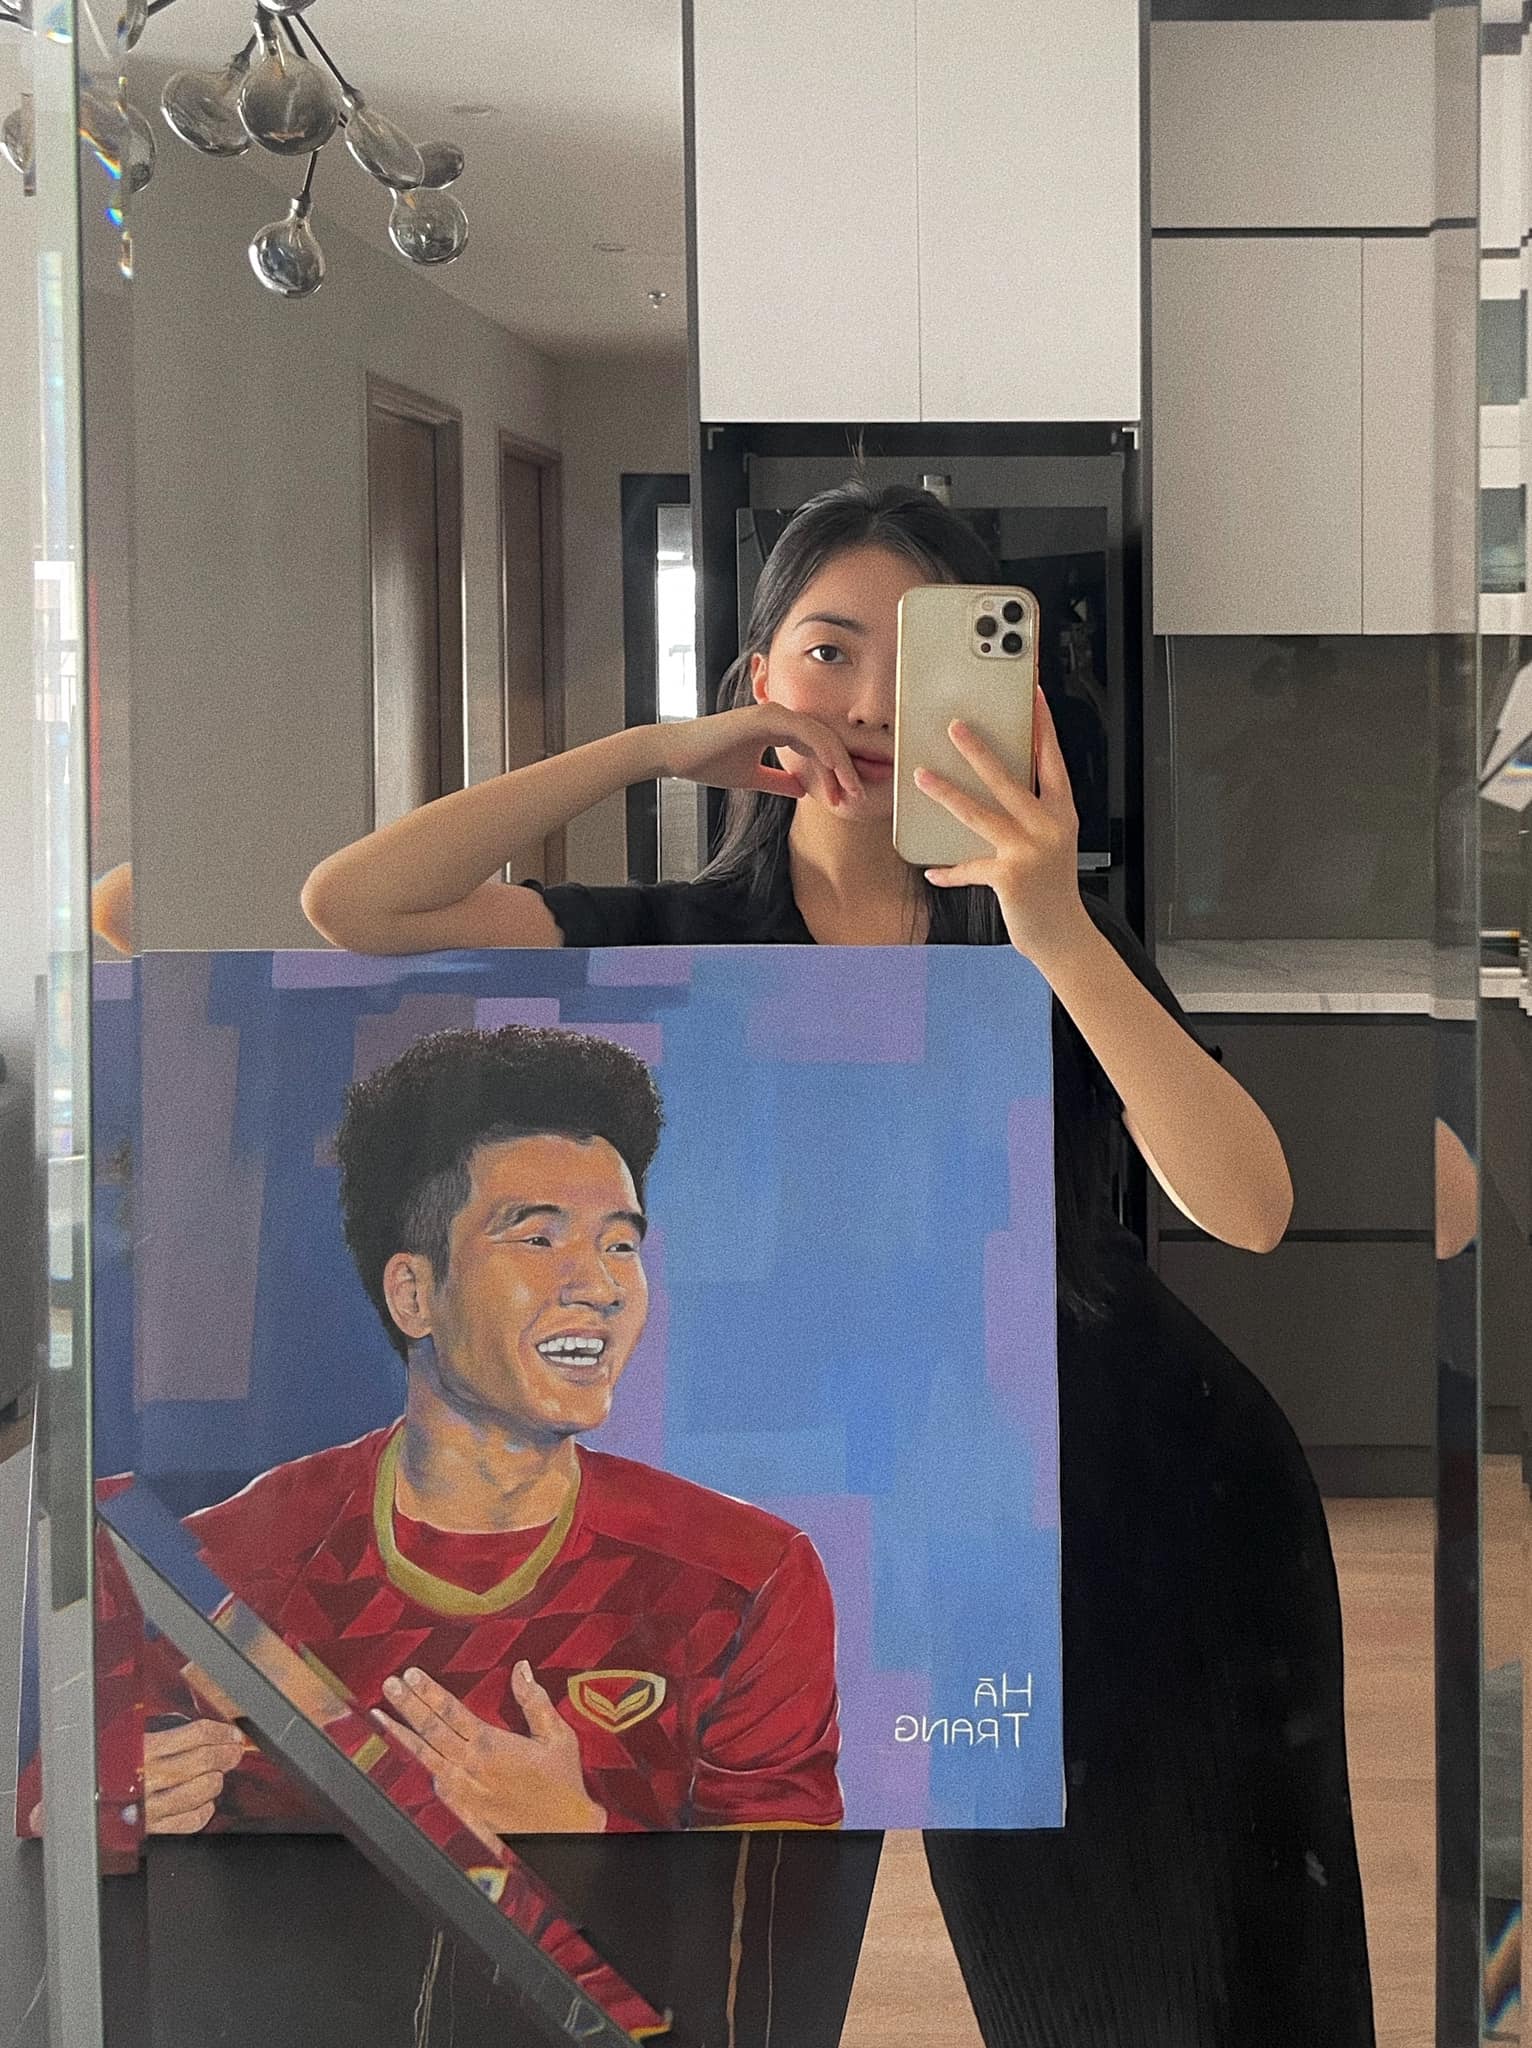 Mai Hà Trang vẽ bức tranh chân dung của bạn trai Hà Đức Chinh khiến nhiều người bất ngờ